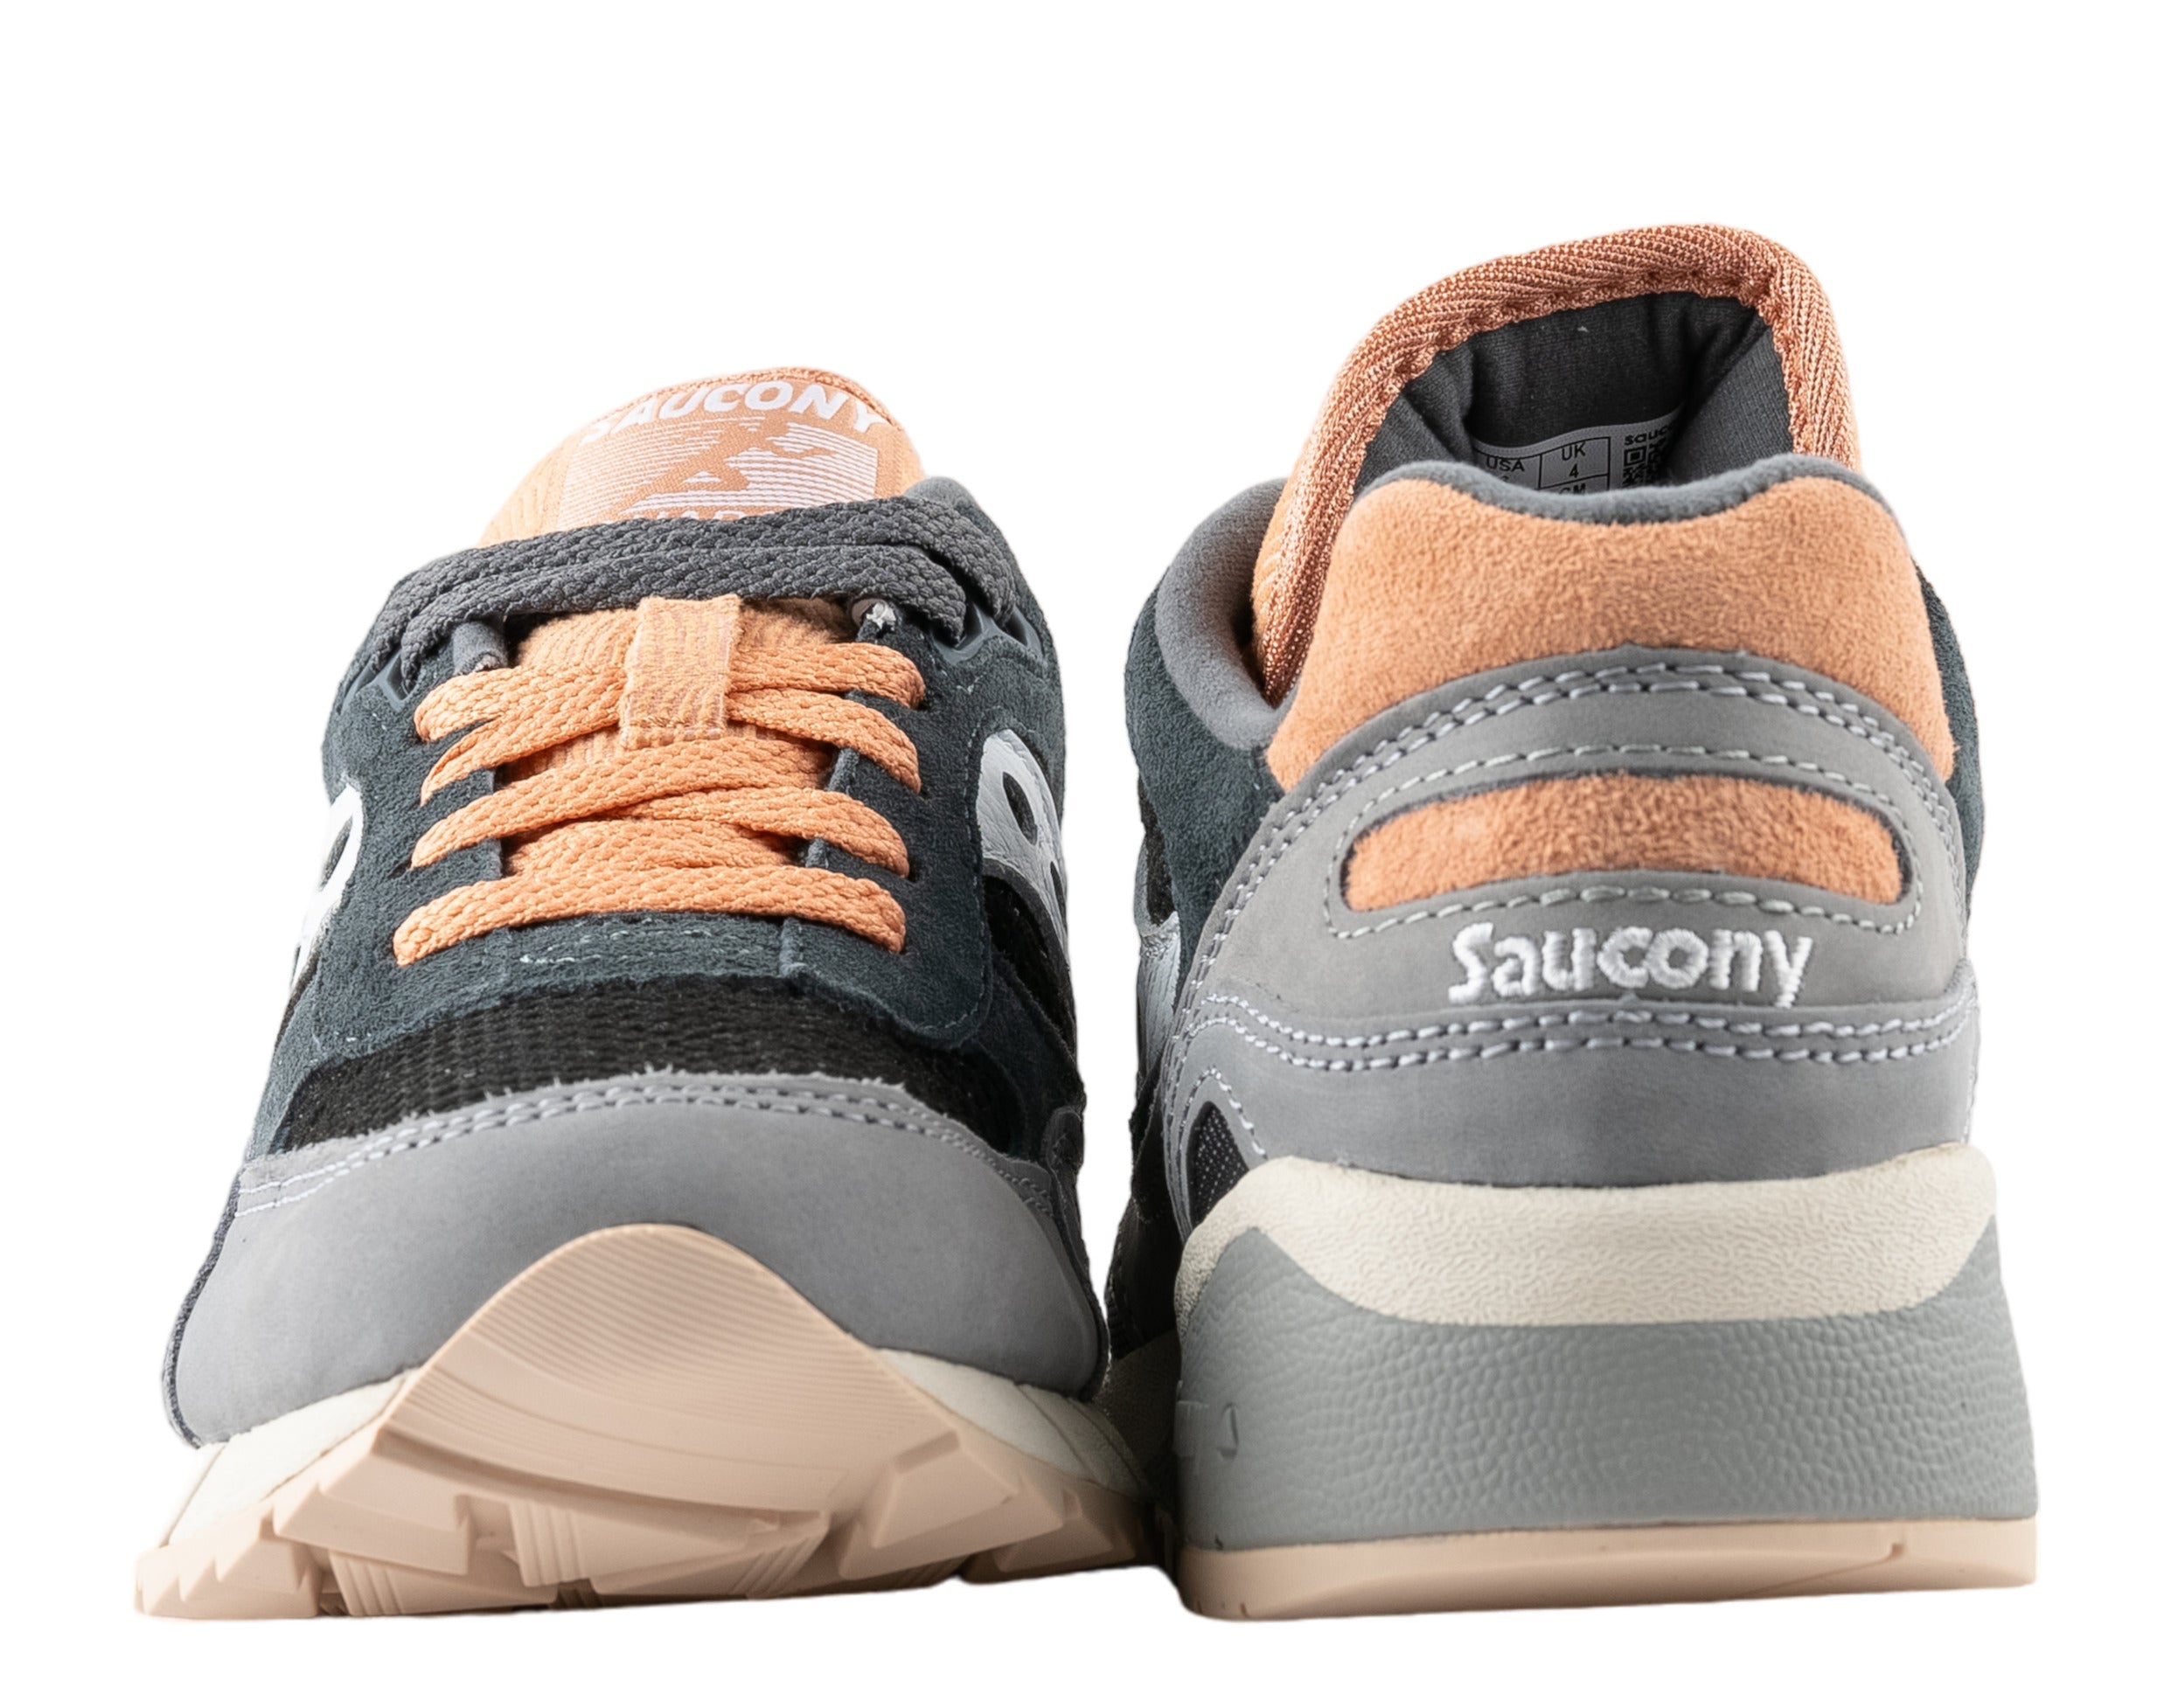 Saucony Originals Shadow 6000 Premium Women's Running Shoes